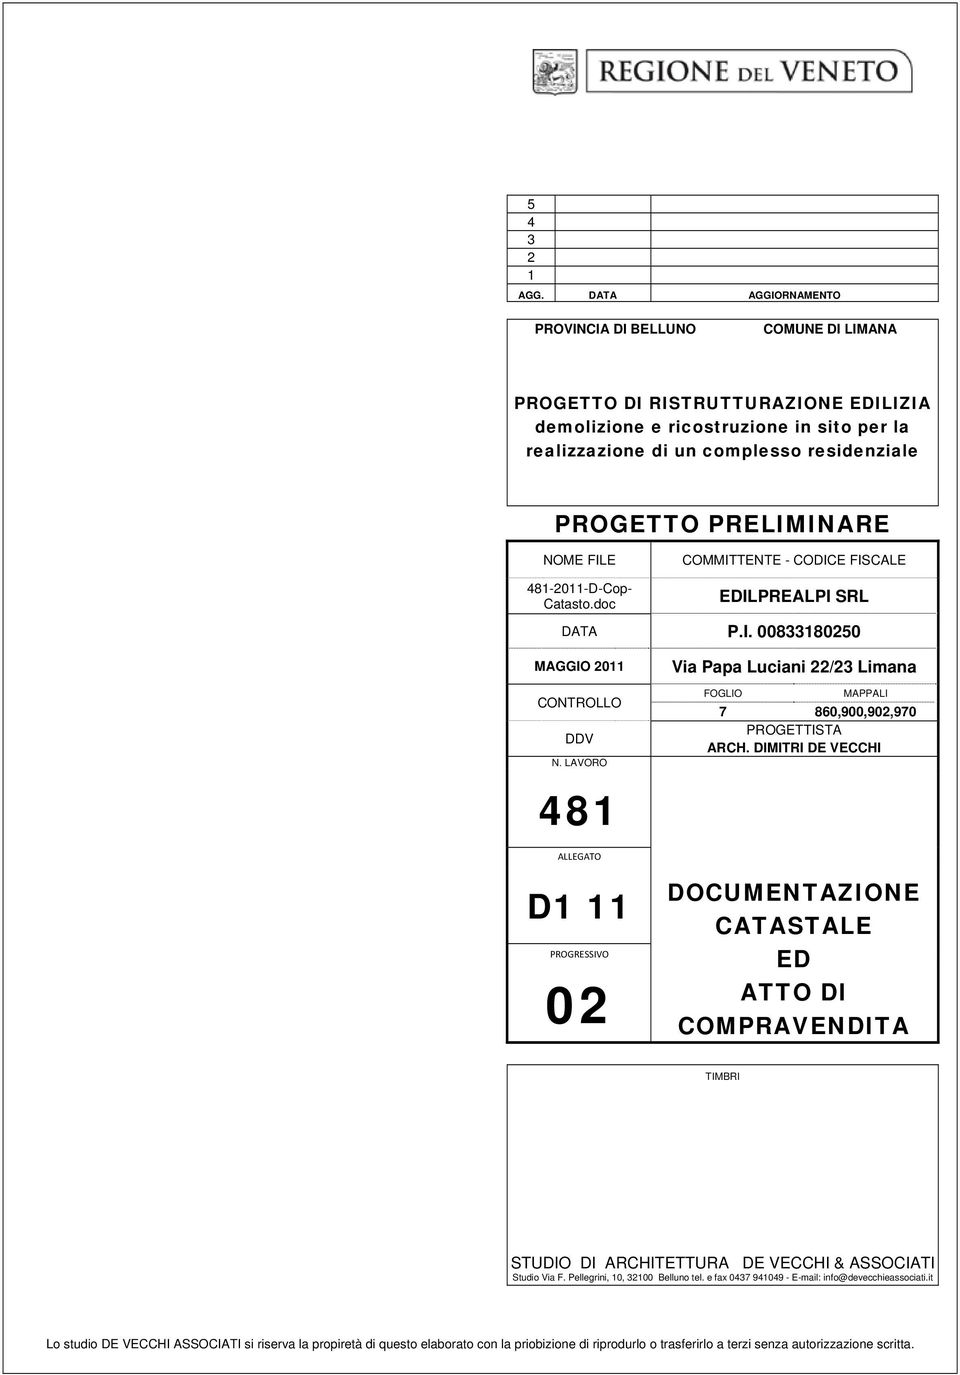 PRELIMINARE NOME FILE COMMITTENTE - CODICE FISCALE 481-2011-D-Cop- Catasto.doc EDILPREALPI SRL DATA P.I. 00833180250 MAGGIO 2011 CONTROLLO DDV N.